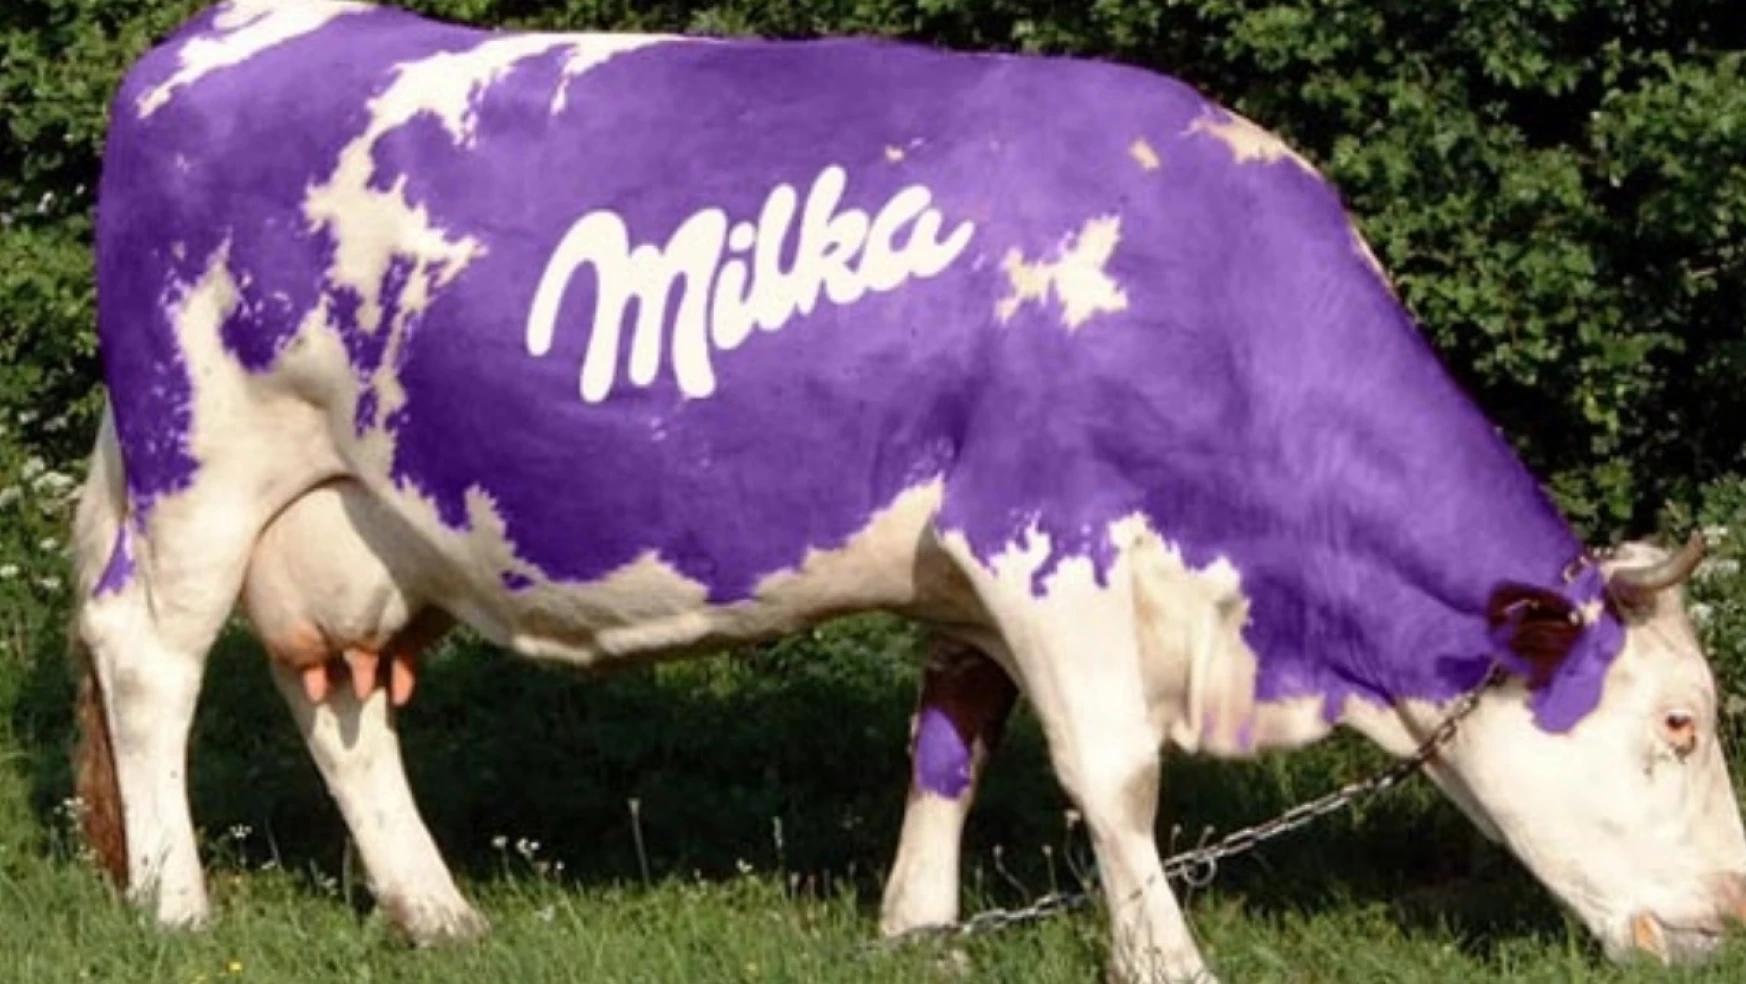 MİLKA BOYKOT MU? Mor inekler boykot radarında: Milka hangi ülkenin?